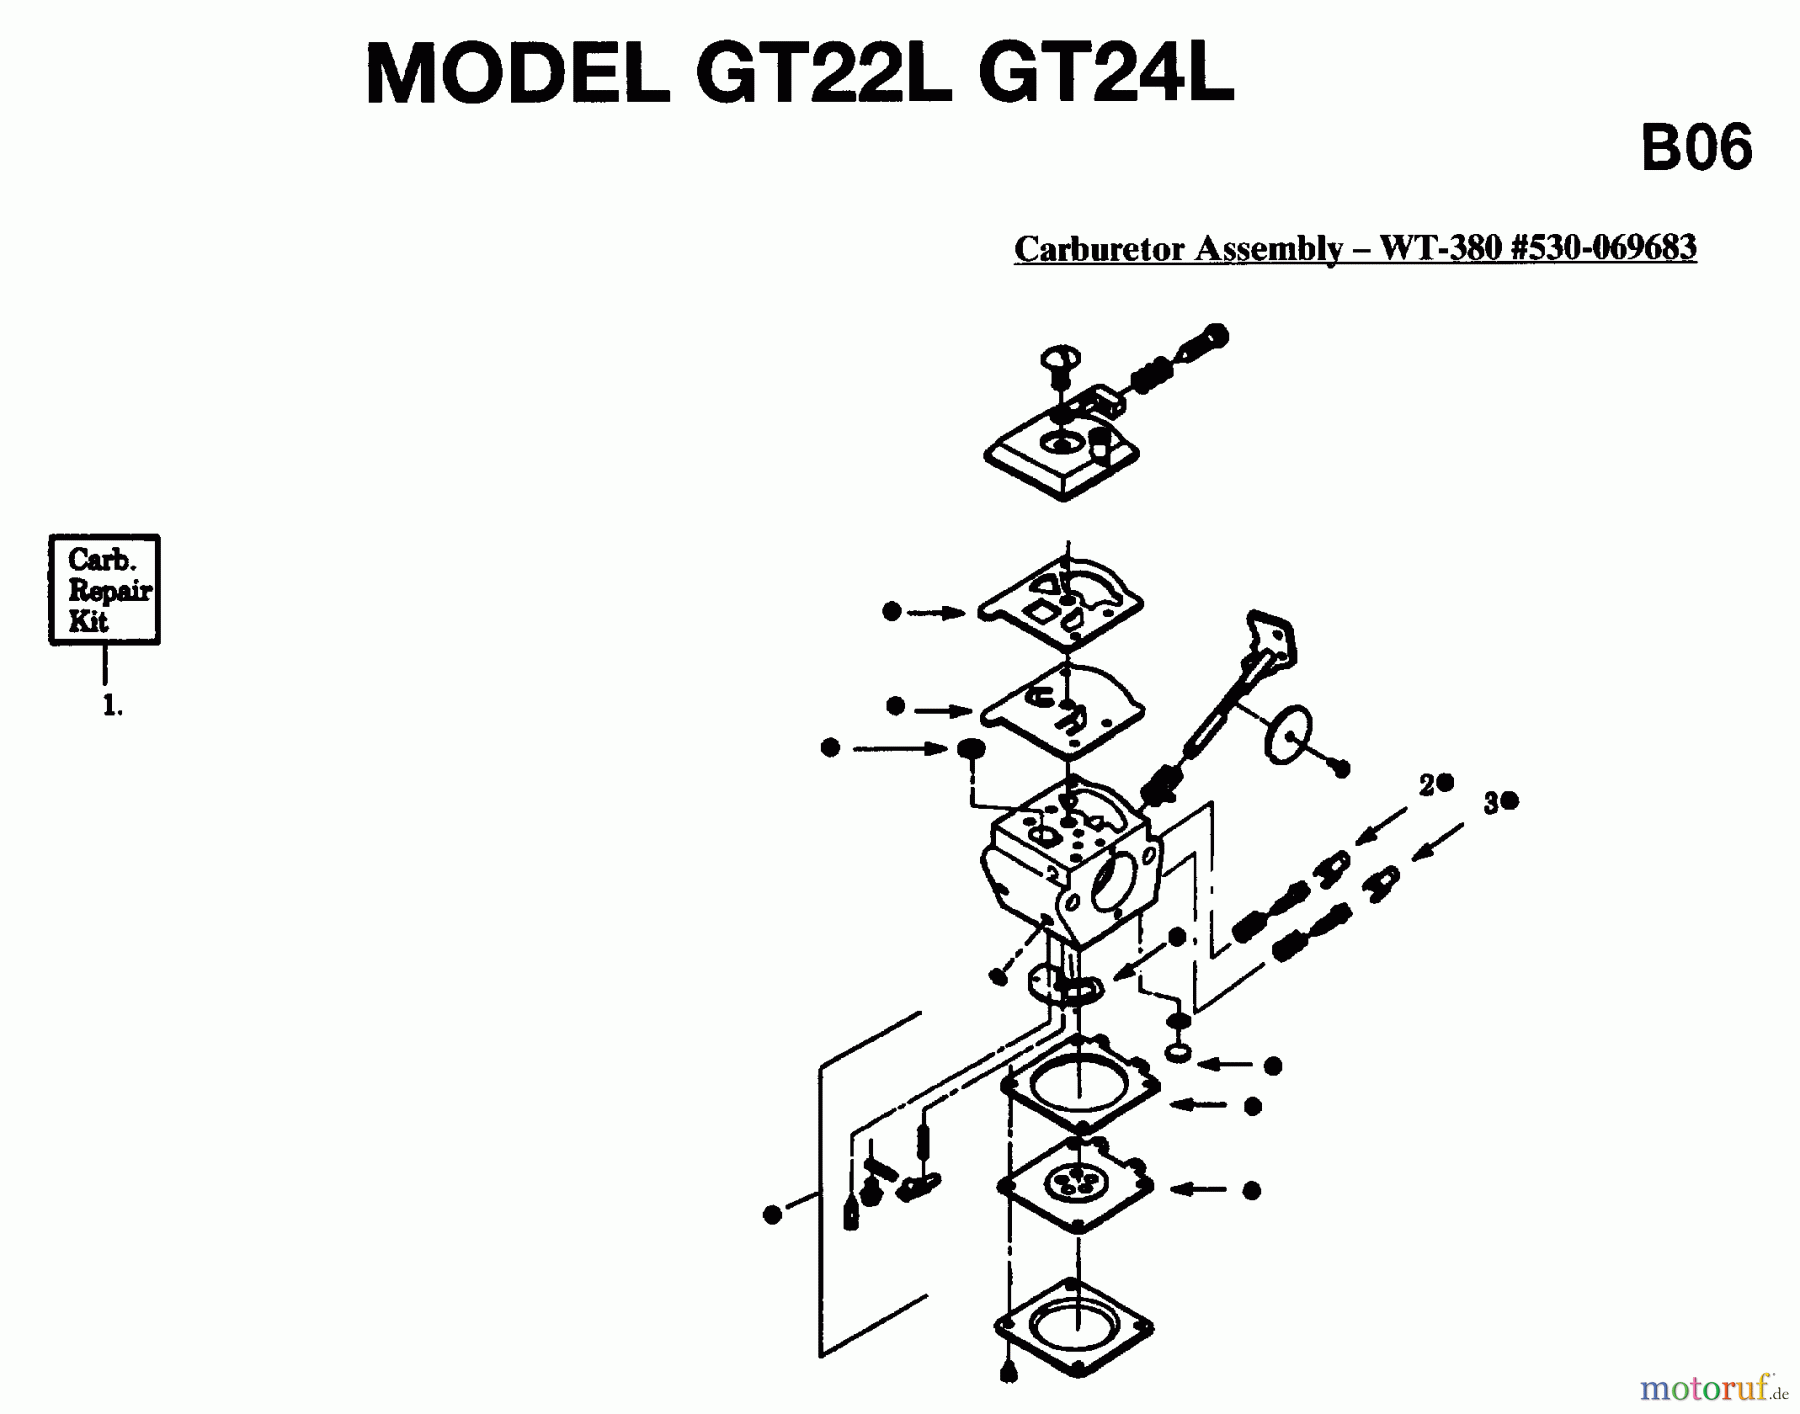  Jonsered Motorsensen, Trimmer GT24L - Jonsered String/Brush Trimmer (1996-03) CARBURETOR DETAILS